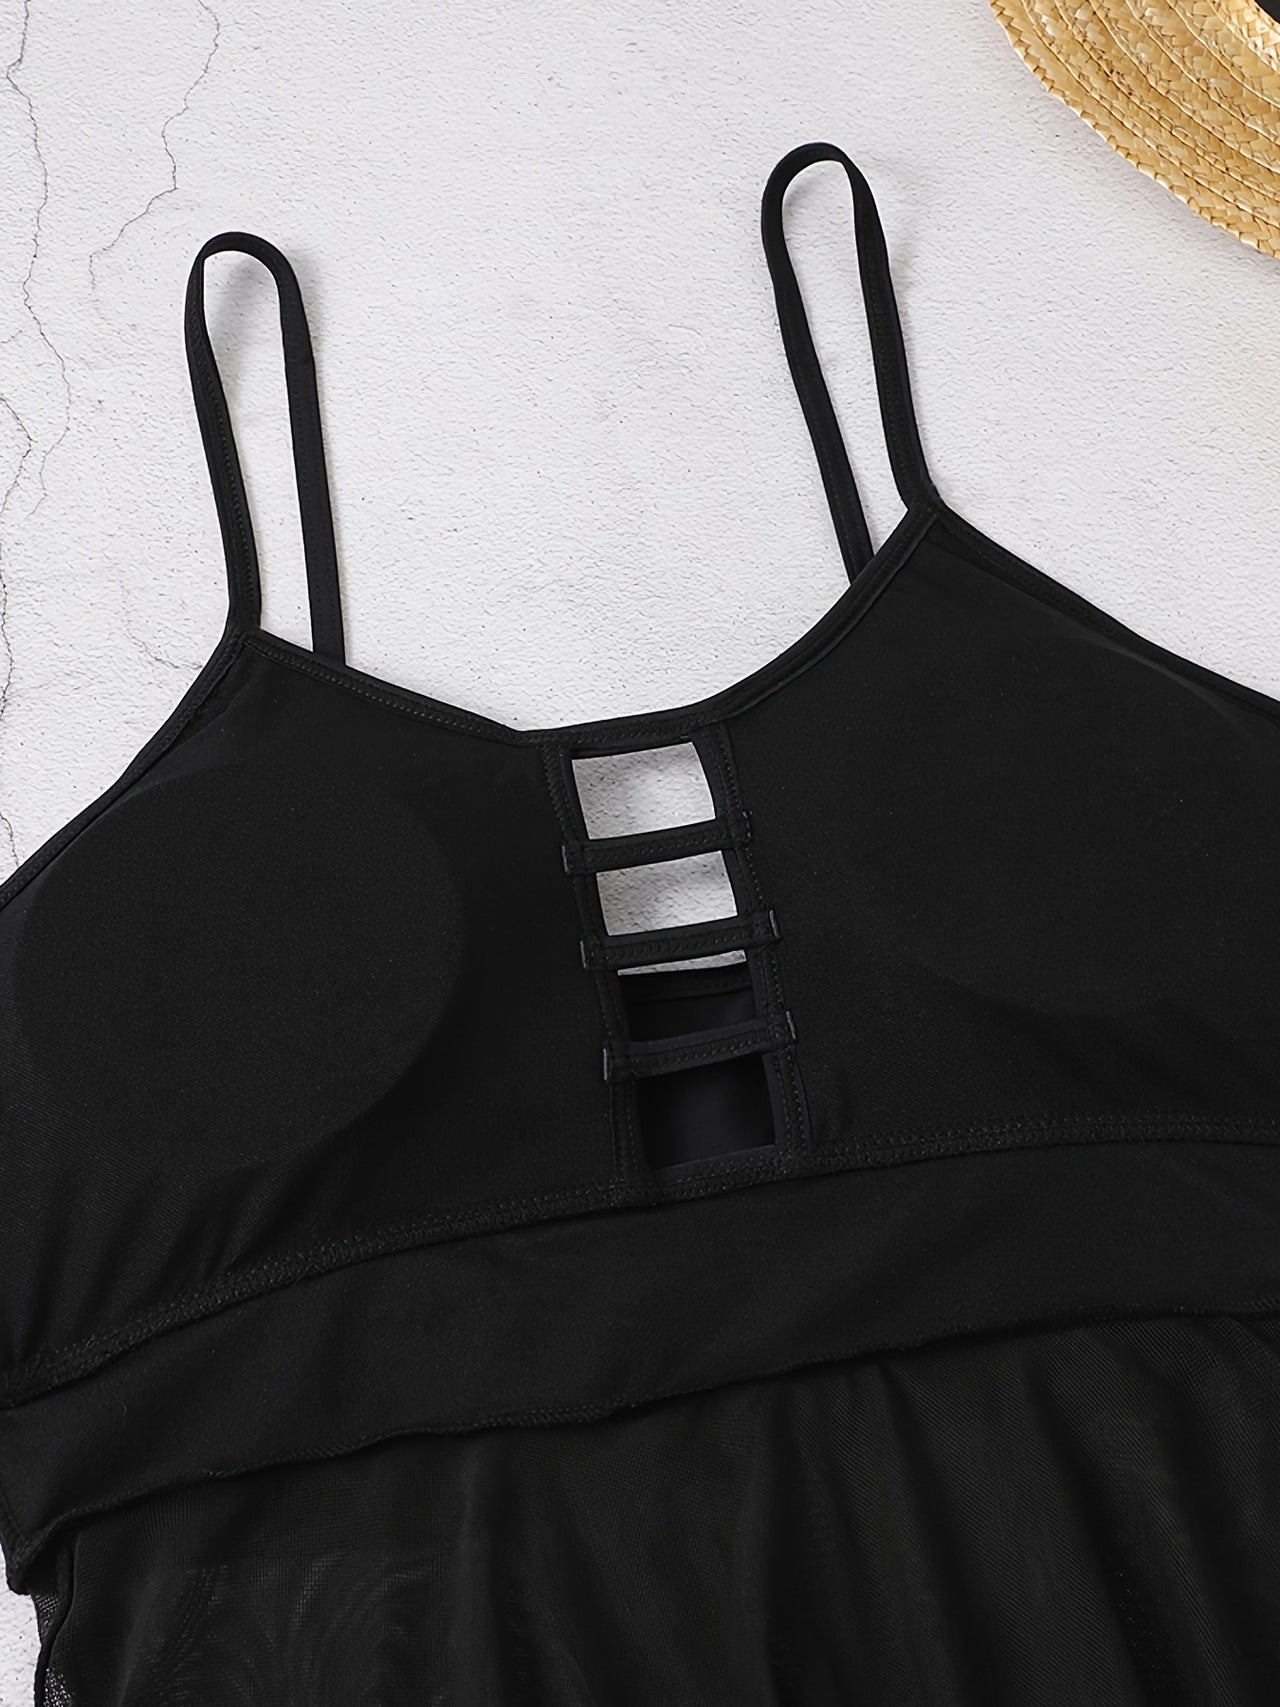 Women's Plus Size  Paisley Print Cut Out Top Retro Swimsuit Set